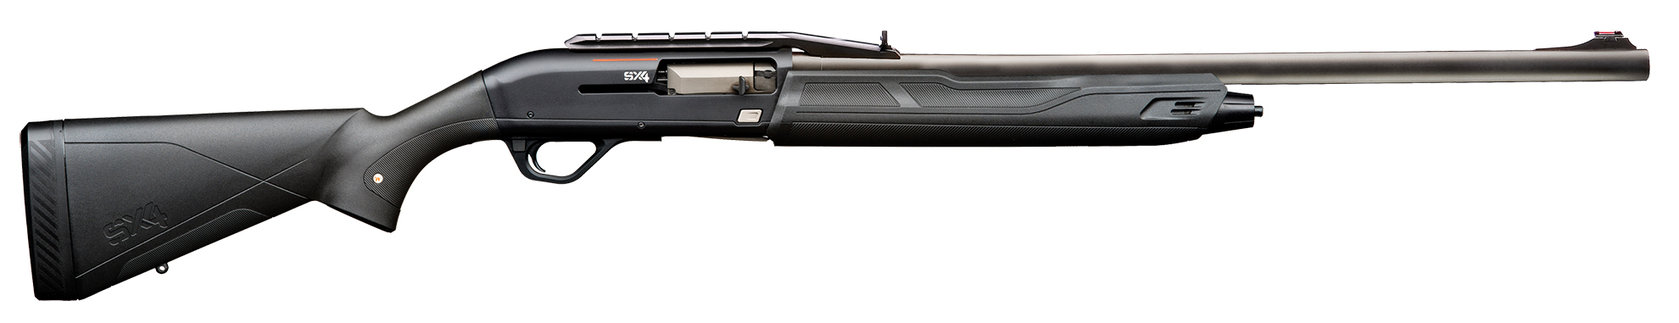 Winchester SX4 Big Game Composite